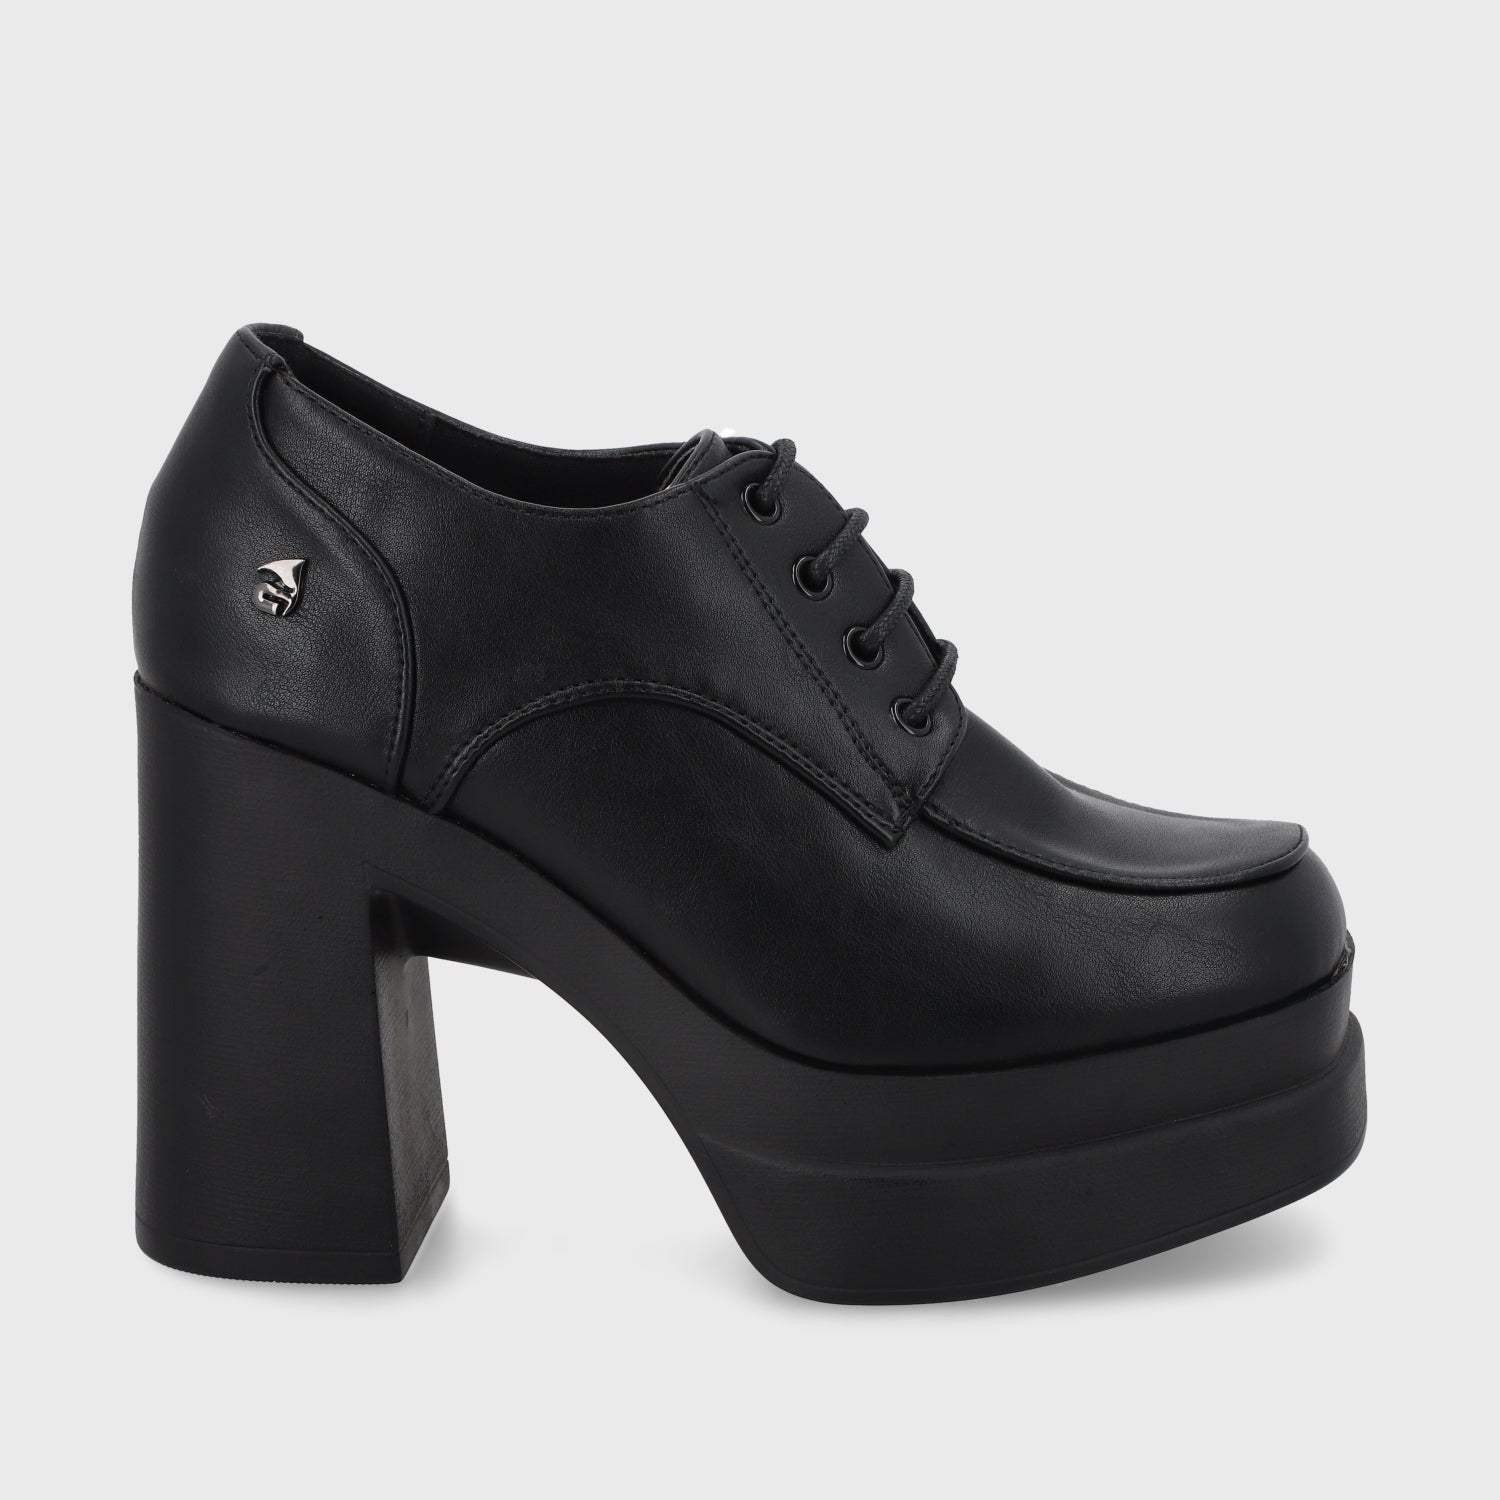 Zapato Negro Mujer 35604 - Gotta Perú